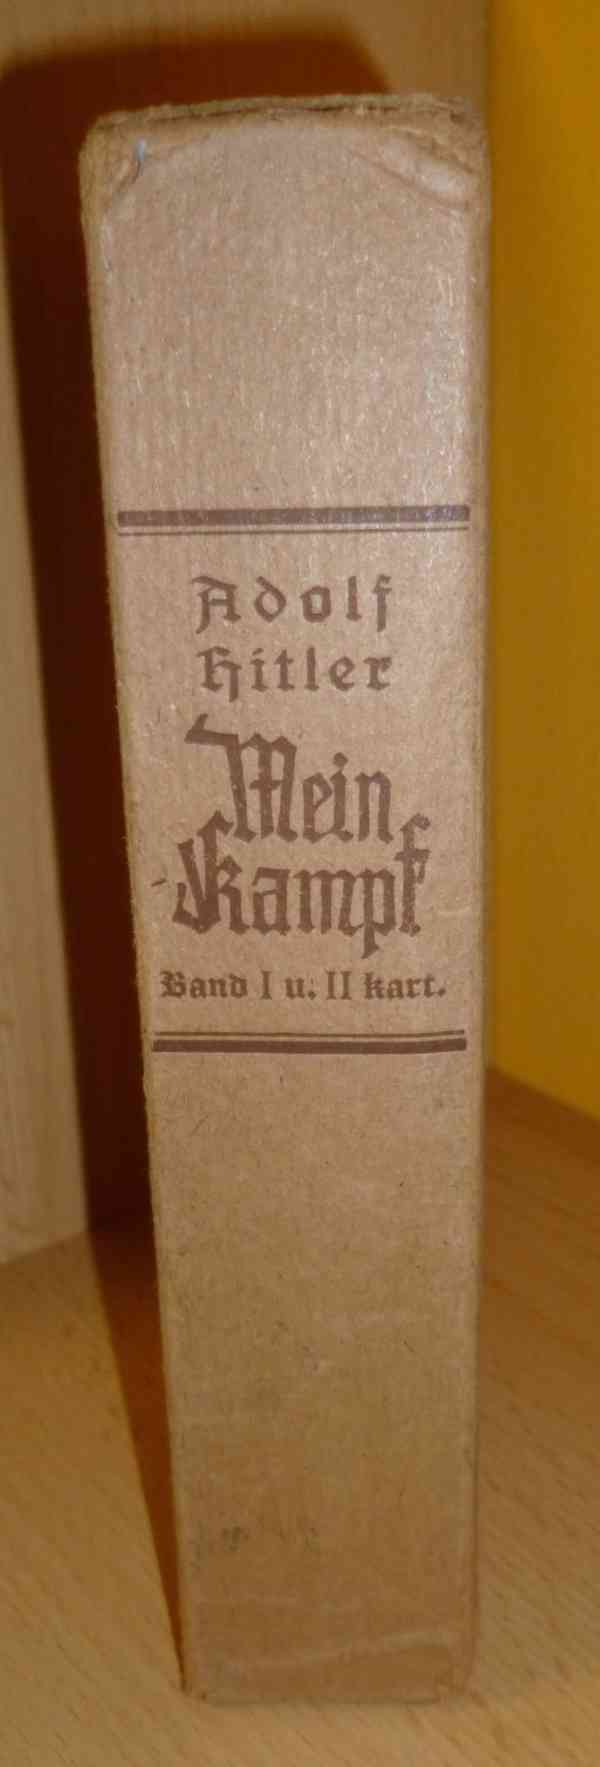 Mein Kampf - foto 3